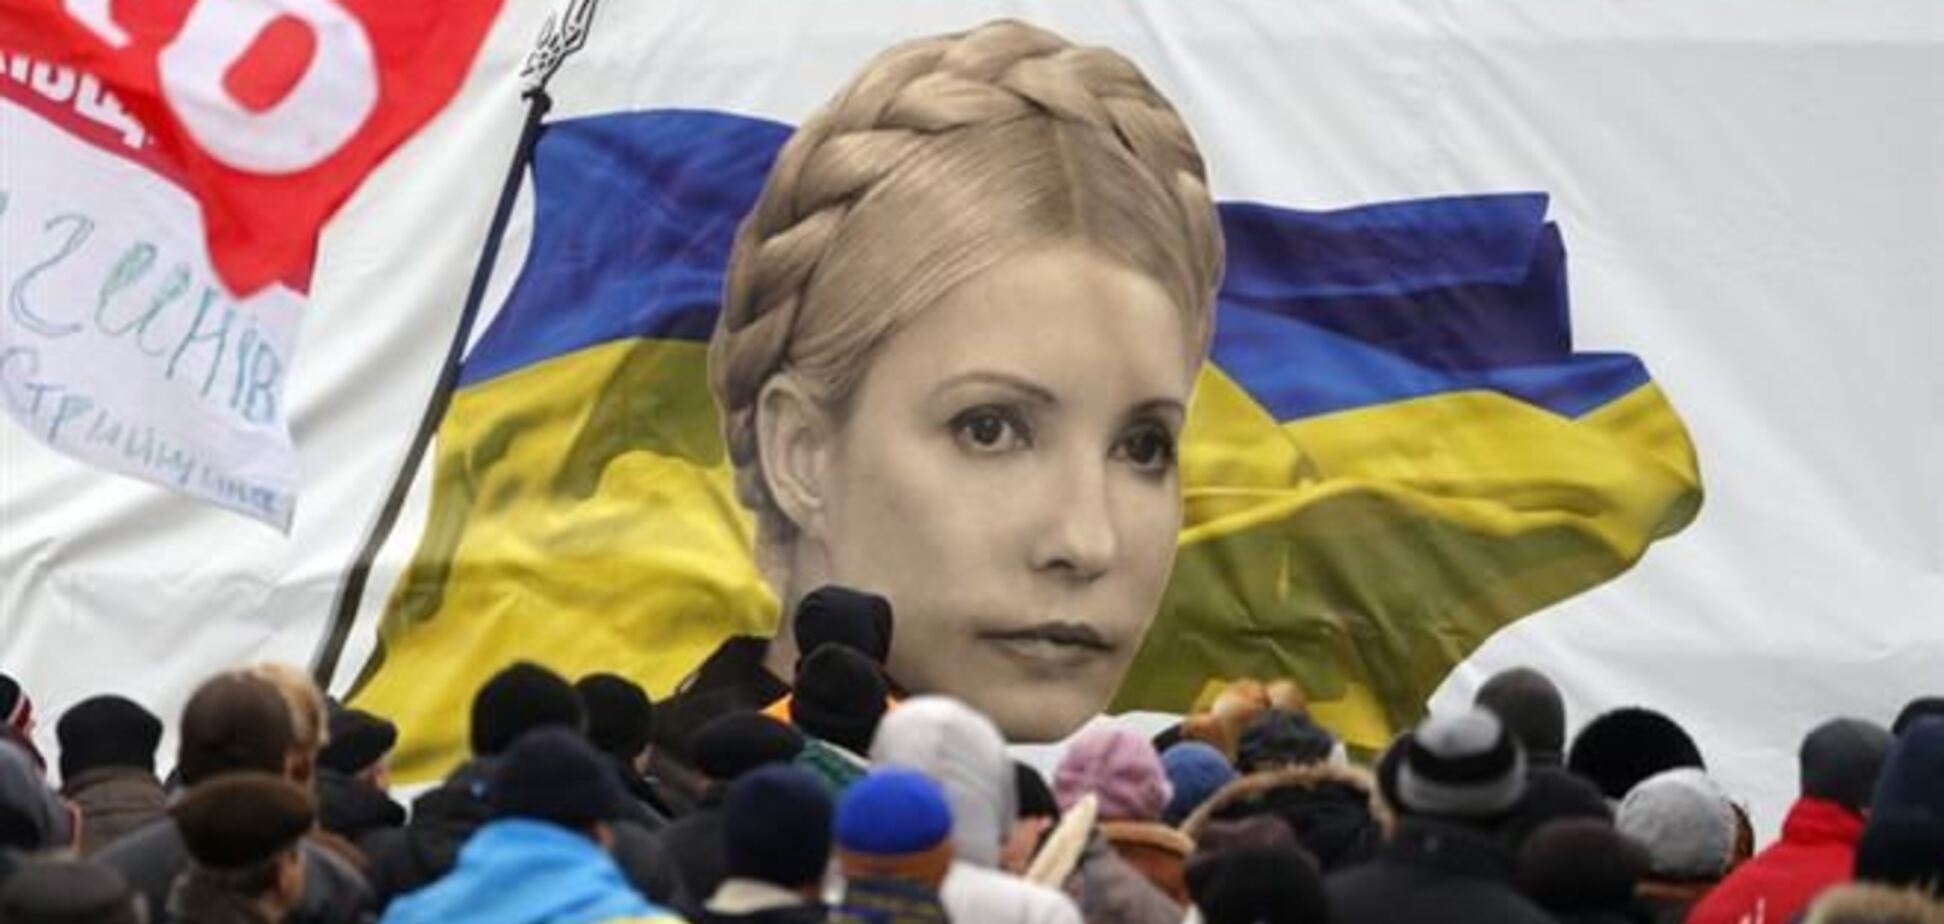 От ЕС нужно требовать Гаагский трибунал для Януковича - Тимошенко